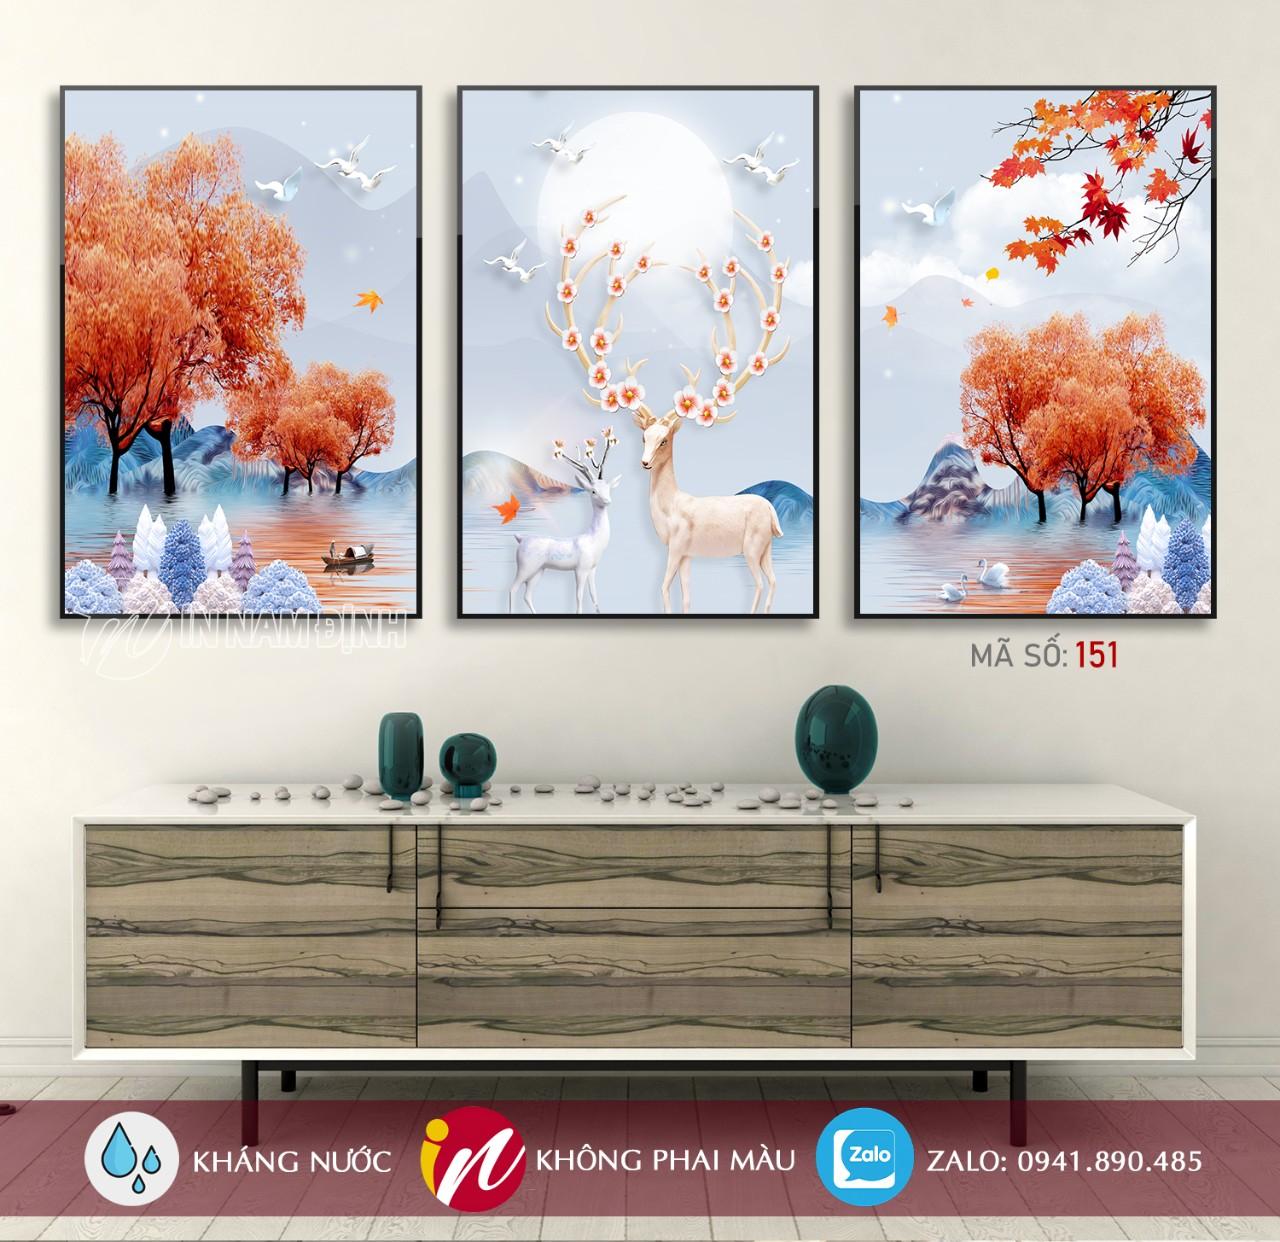 Tranh bộ hiện đại trang trí nội thất sang chảnh chất liệu canvas siêu bền đẹp tại tranhnamdinh.vn